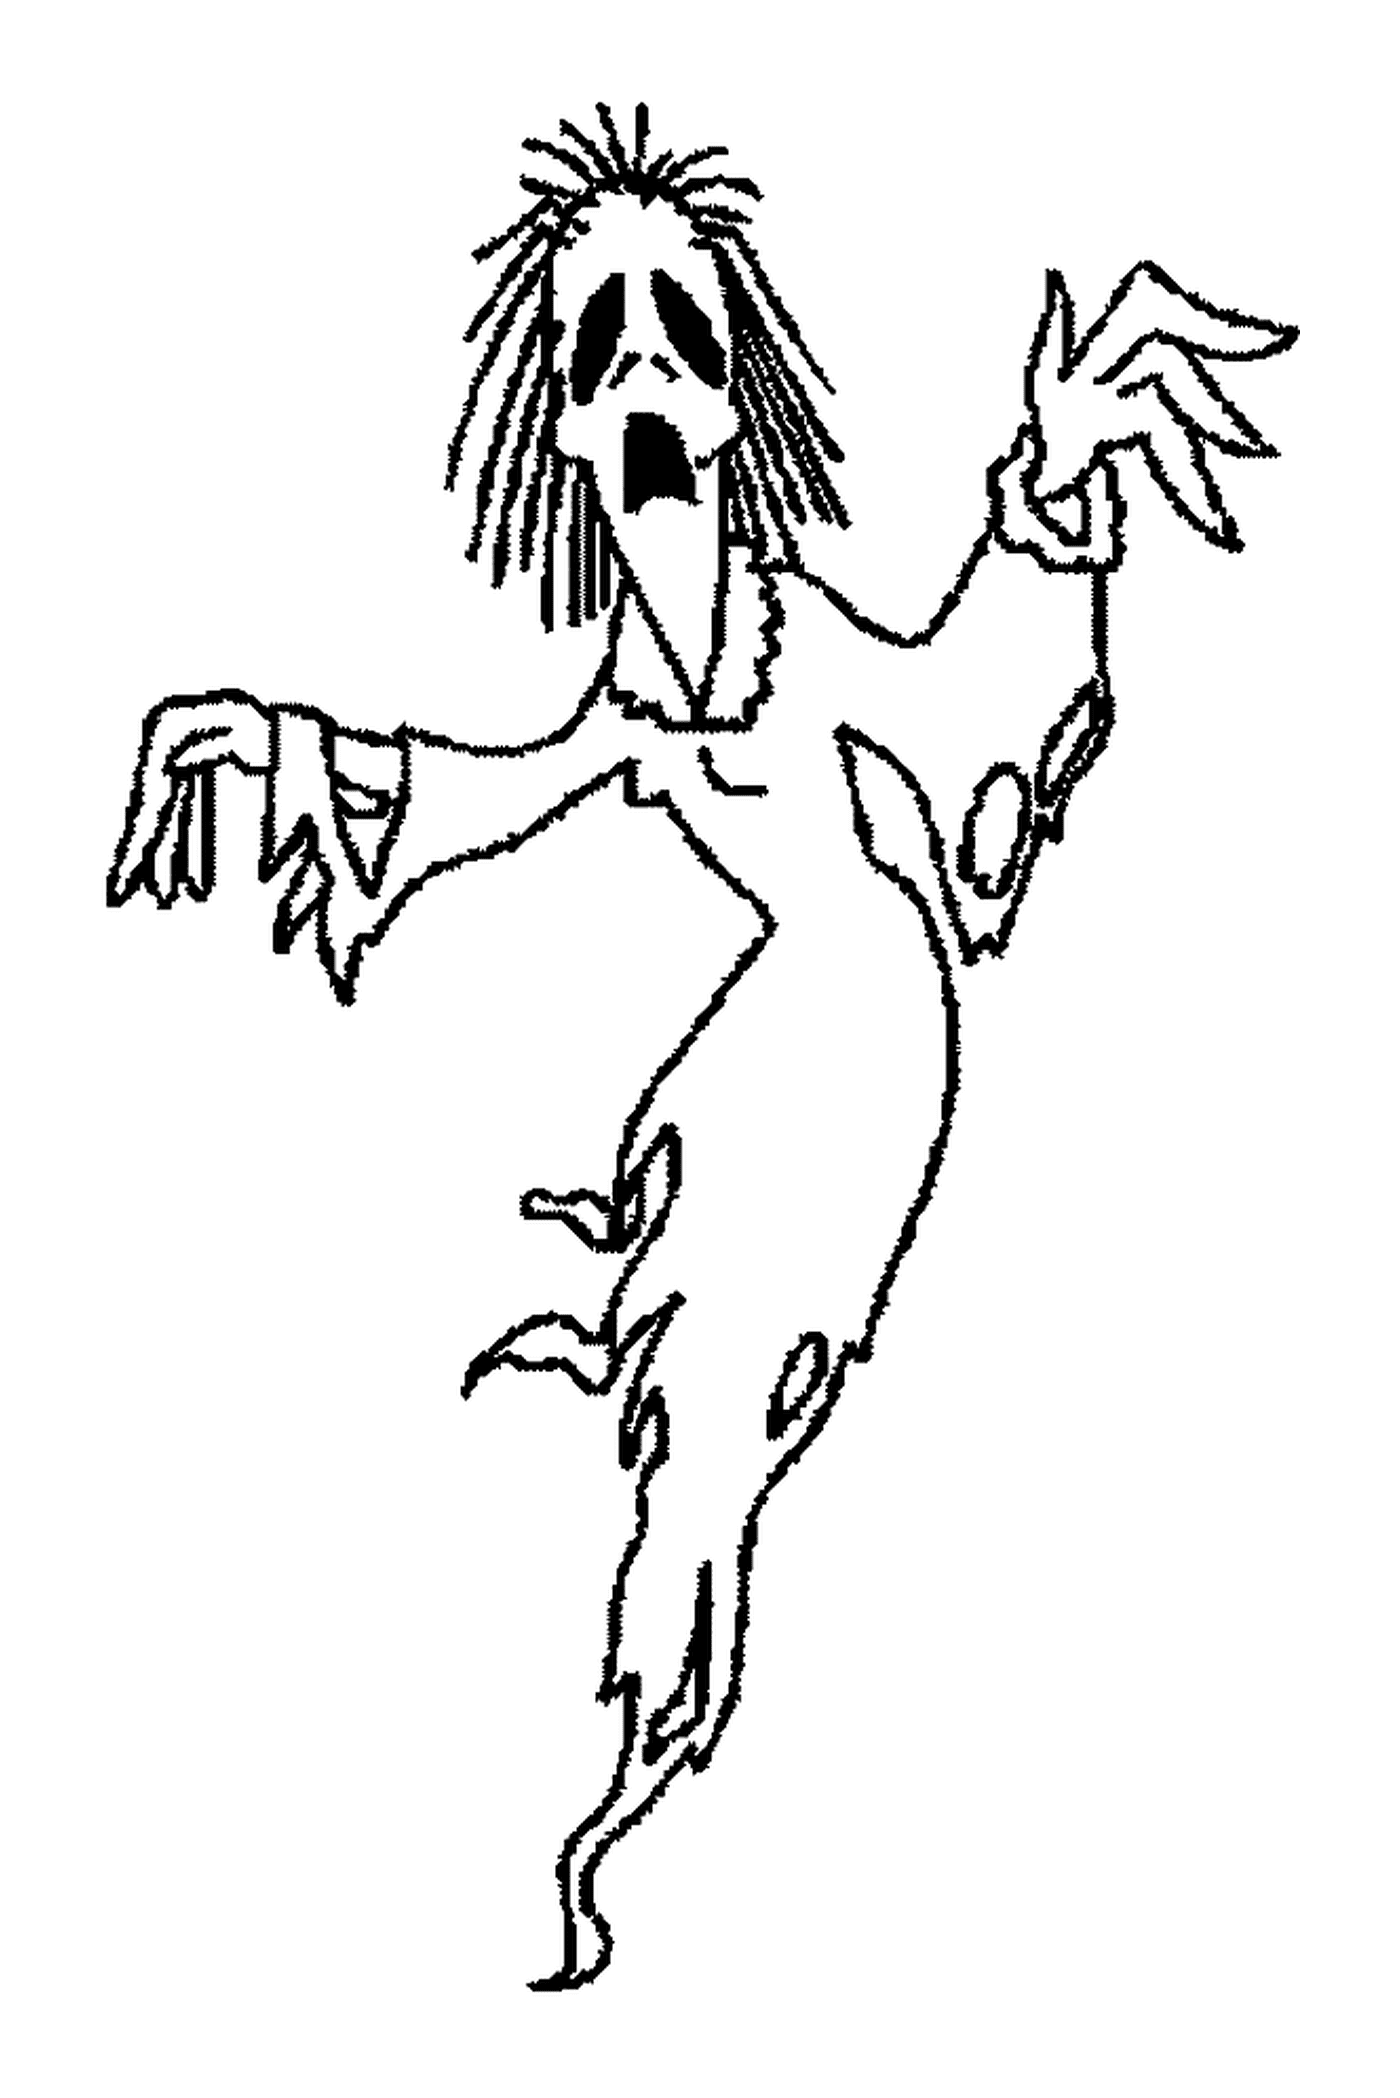  persona che balla travestito da fantasma 